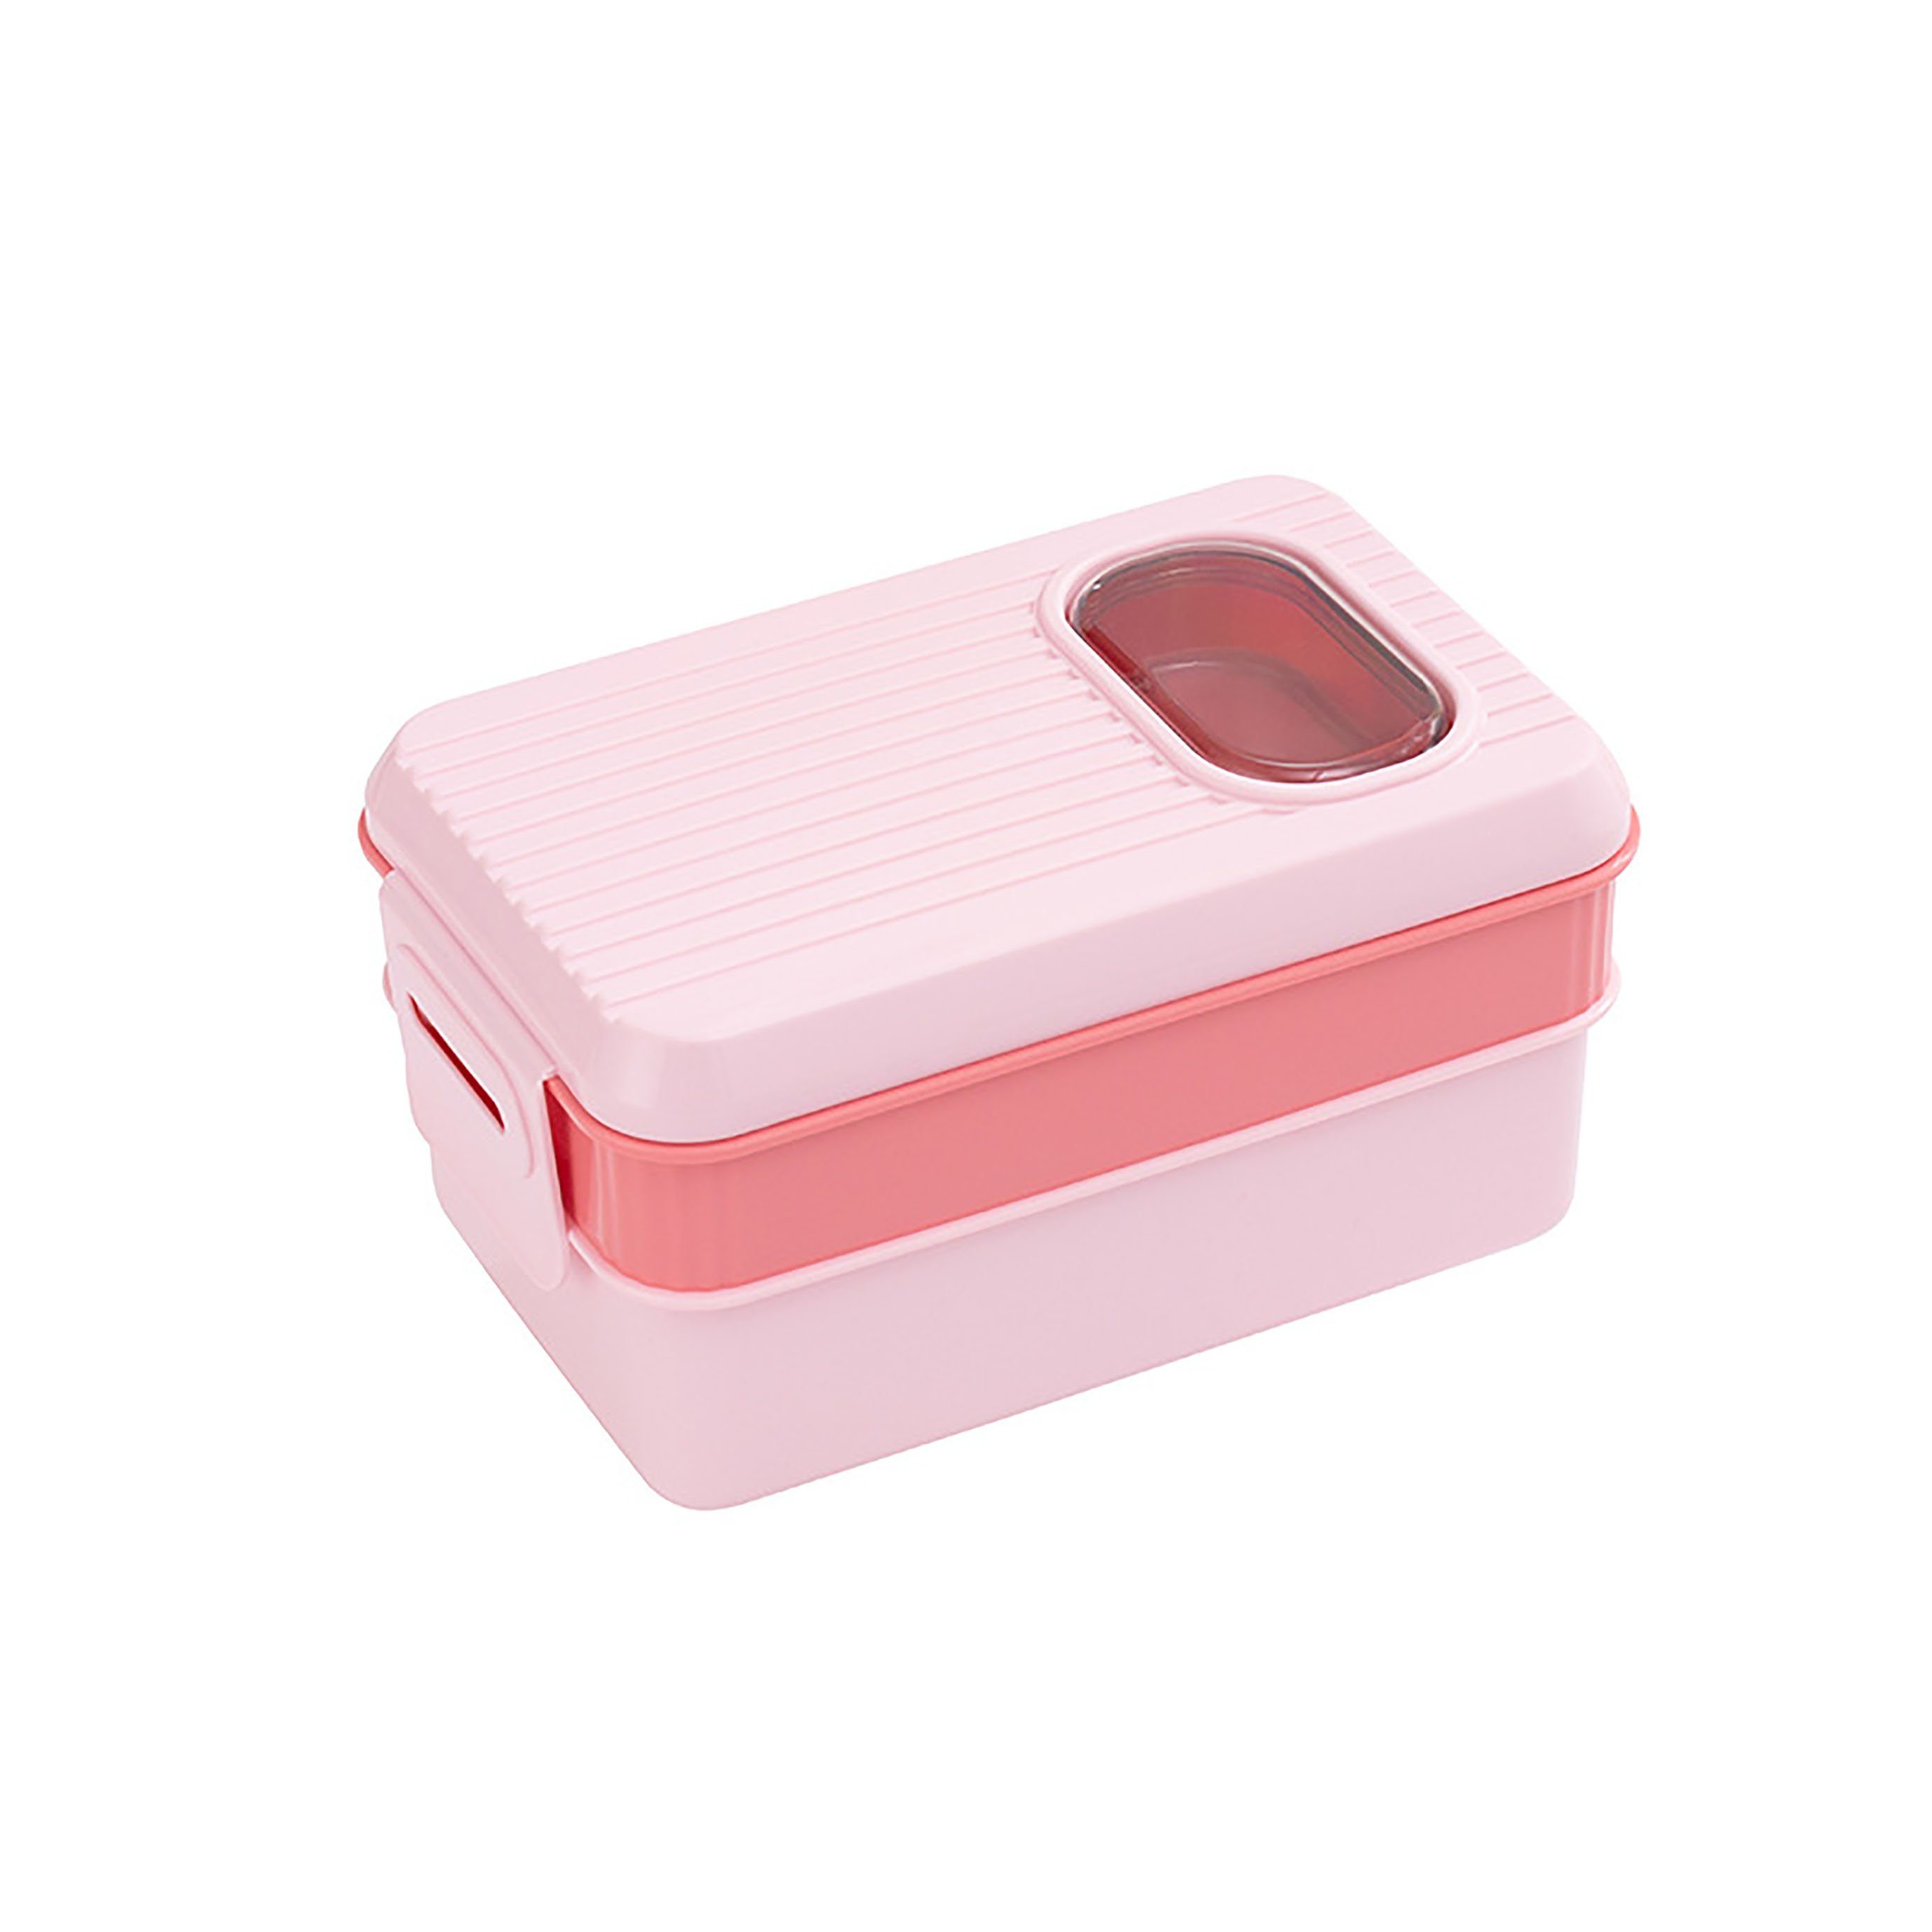 Box Schicht Doppelte Lunch SRRINM Kunststoff Portable Lunchbox Bento Box